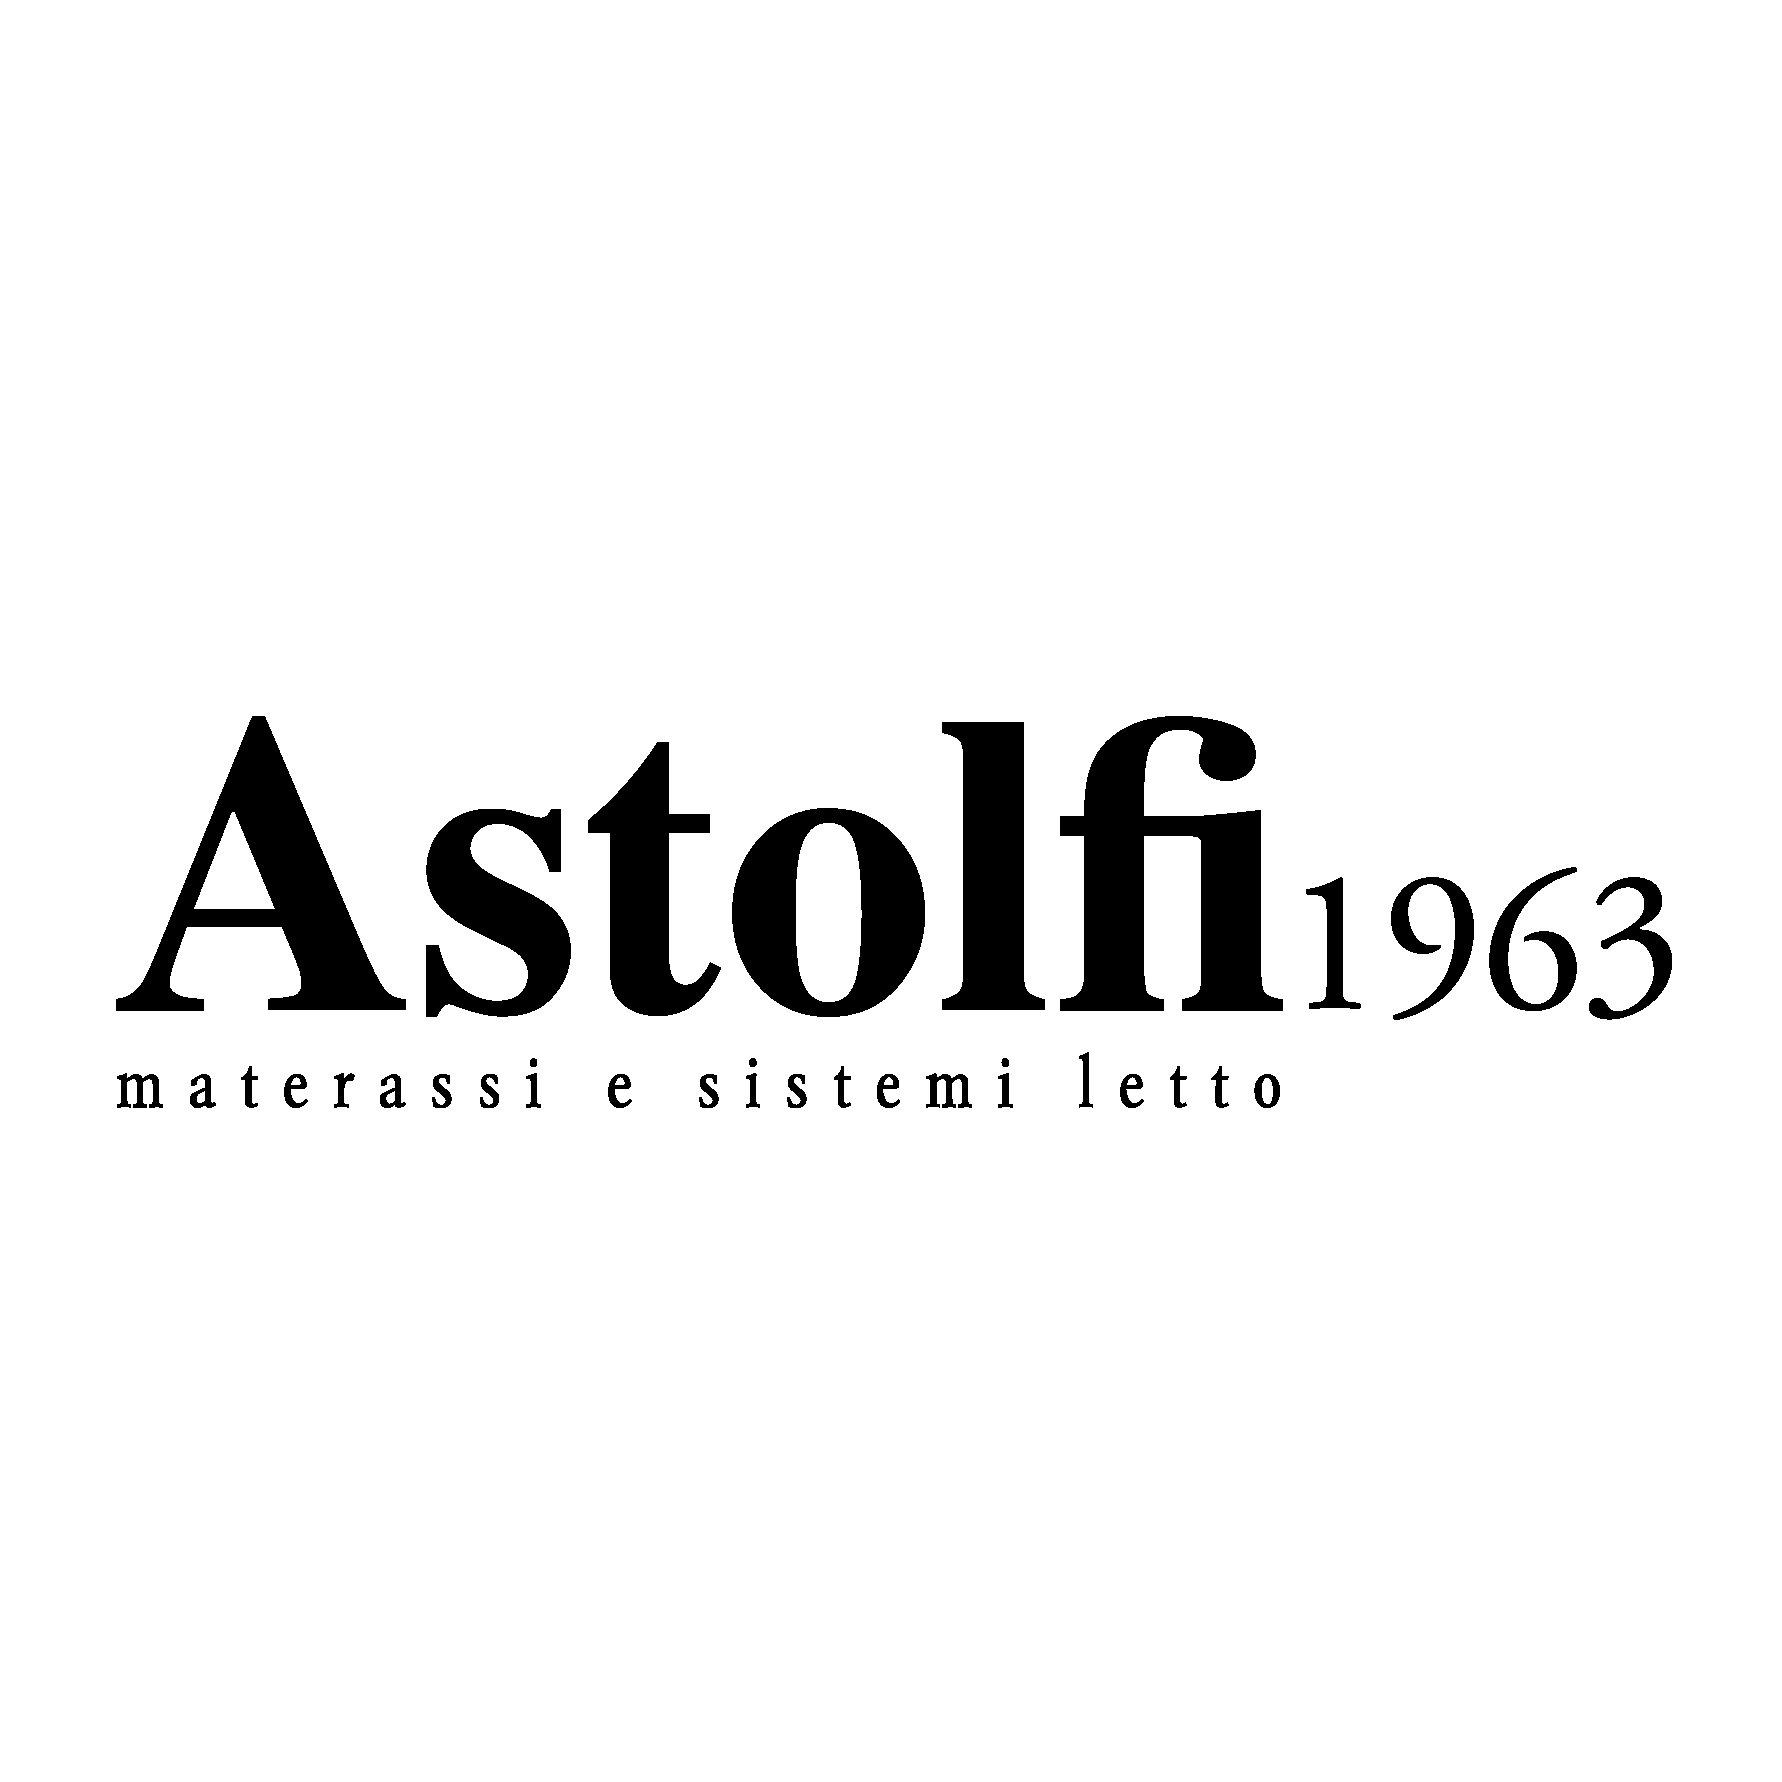 Astolfi 1963